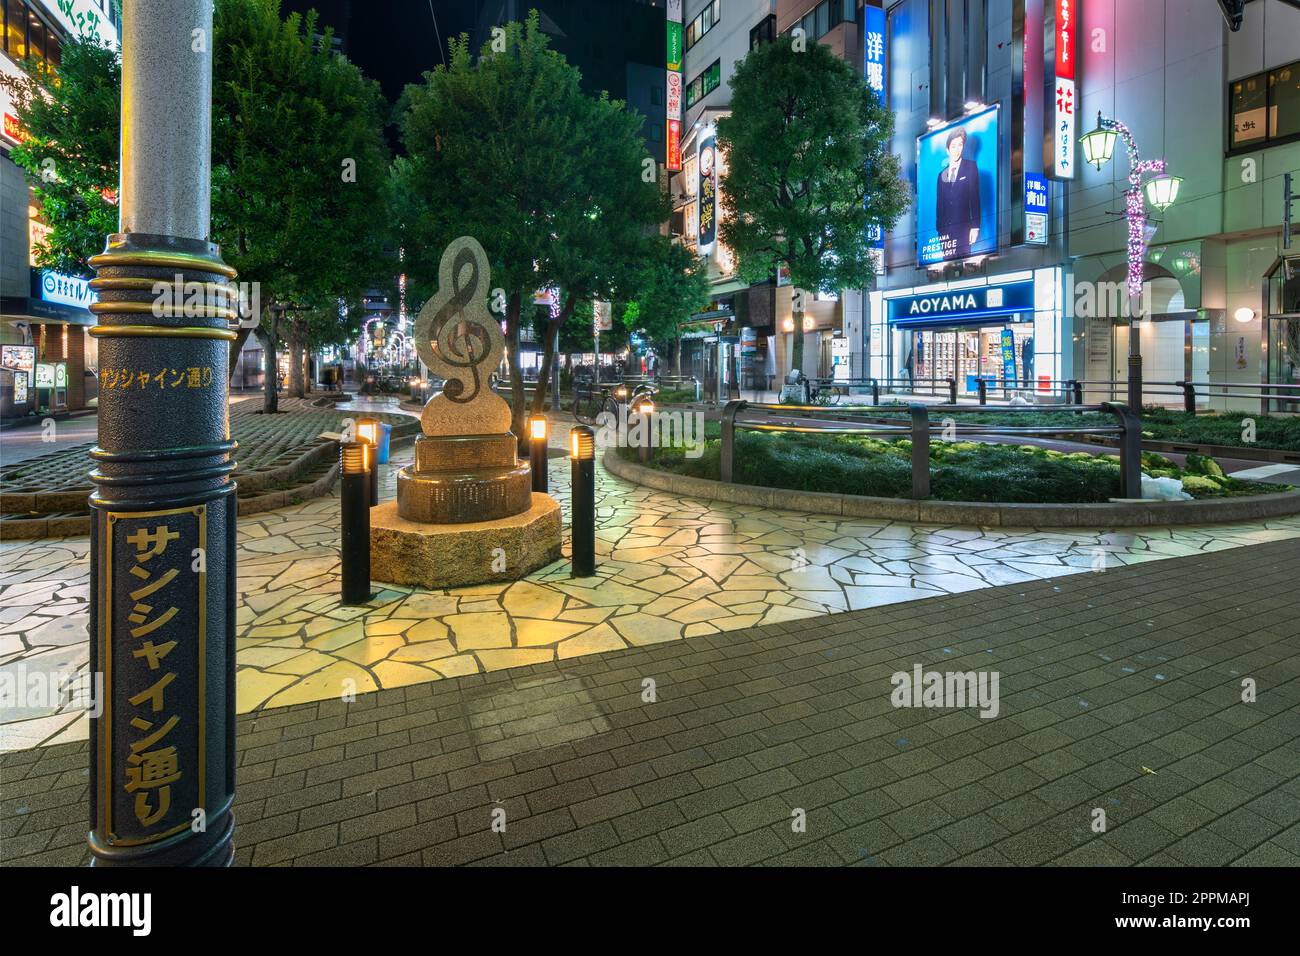 ikebukuro, japon - décembre 31 2012 : lampadaire de Sunshine Street devant un monument en marbre en forme de clef triple à la sortie est de la gare d'Ikebukuro à Tokyo la nuit. Banque D'Images